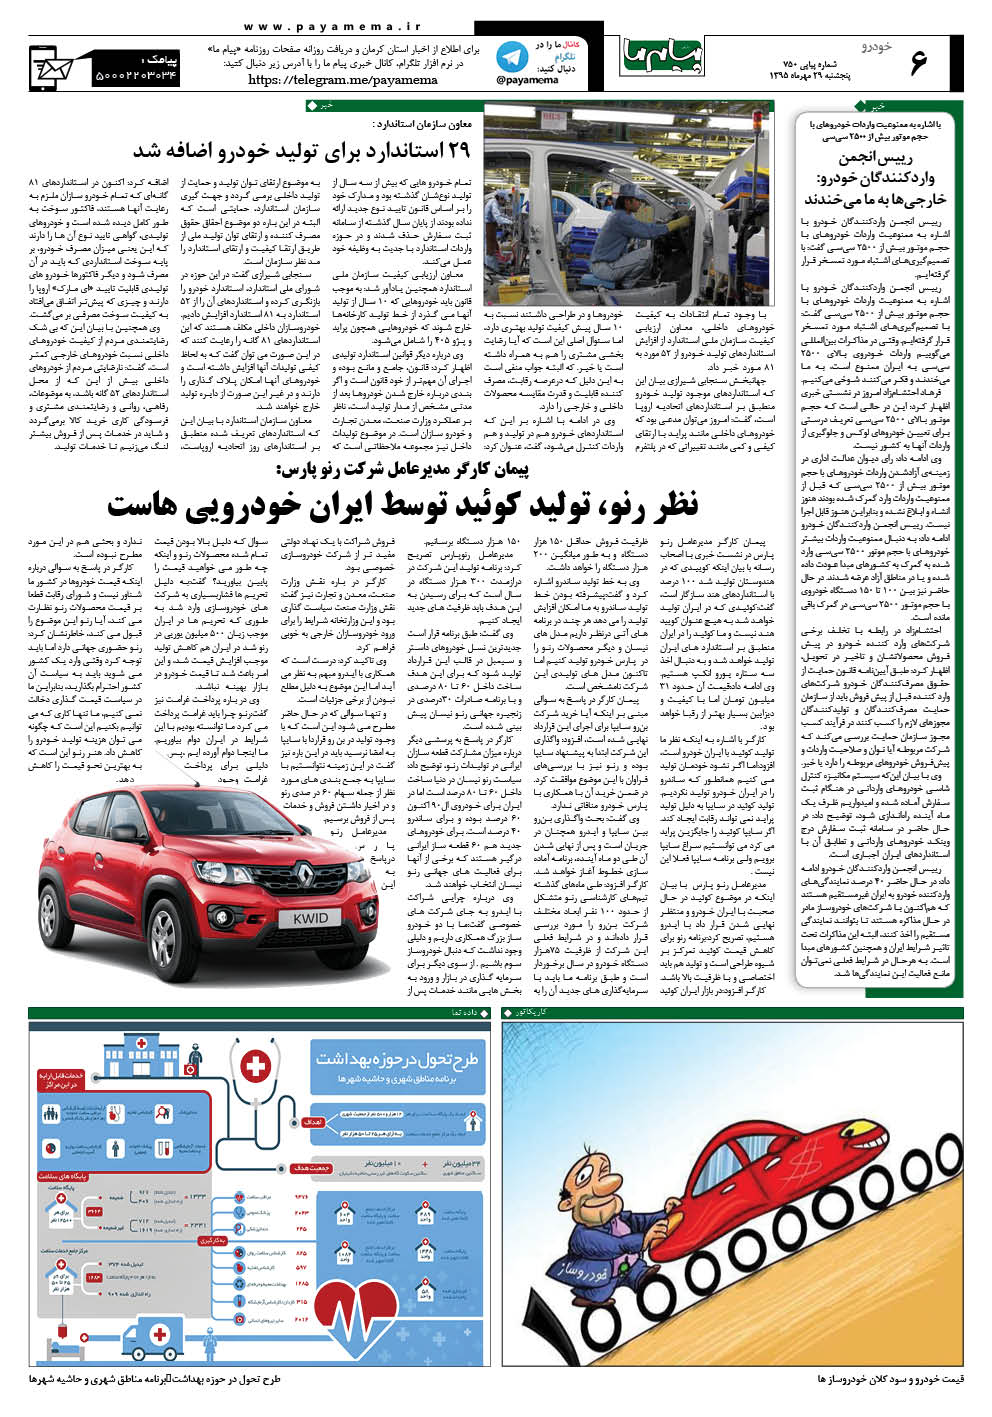 صفحه خودرو شماره 750 روزنامه پیام ما